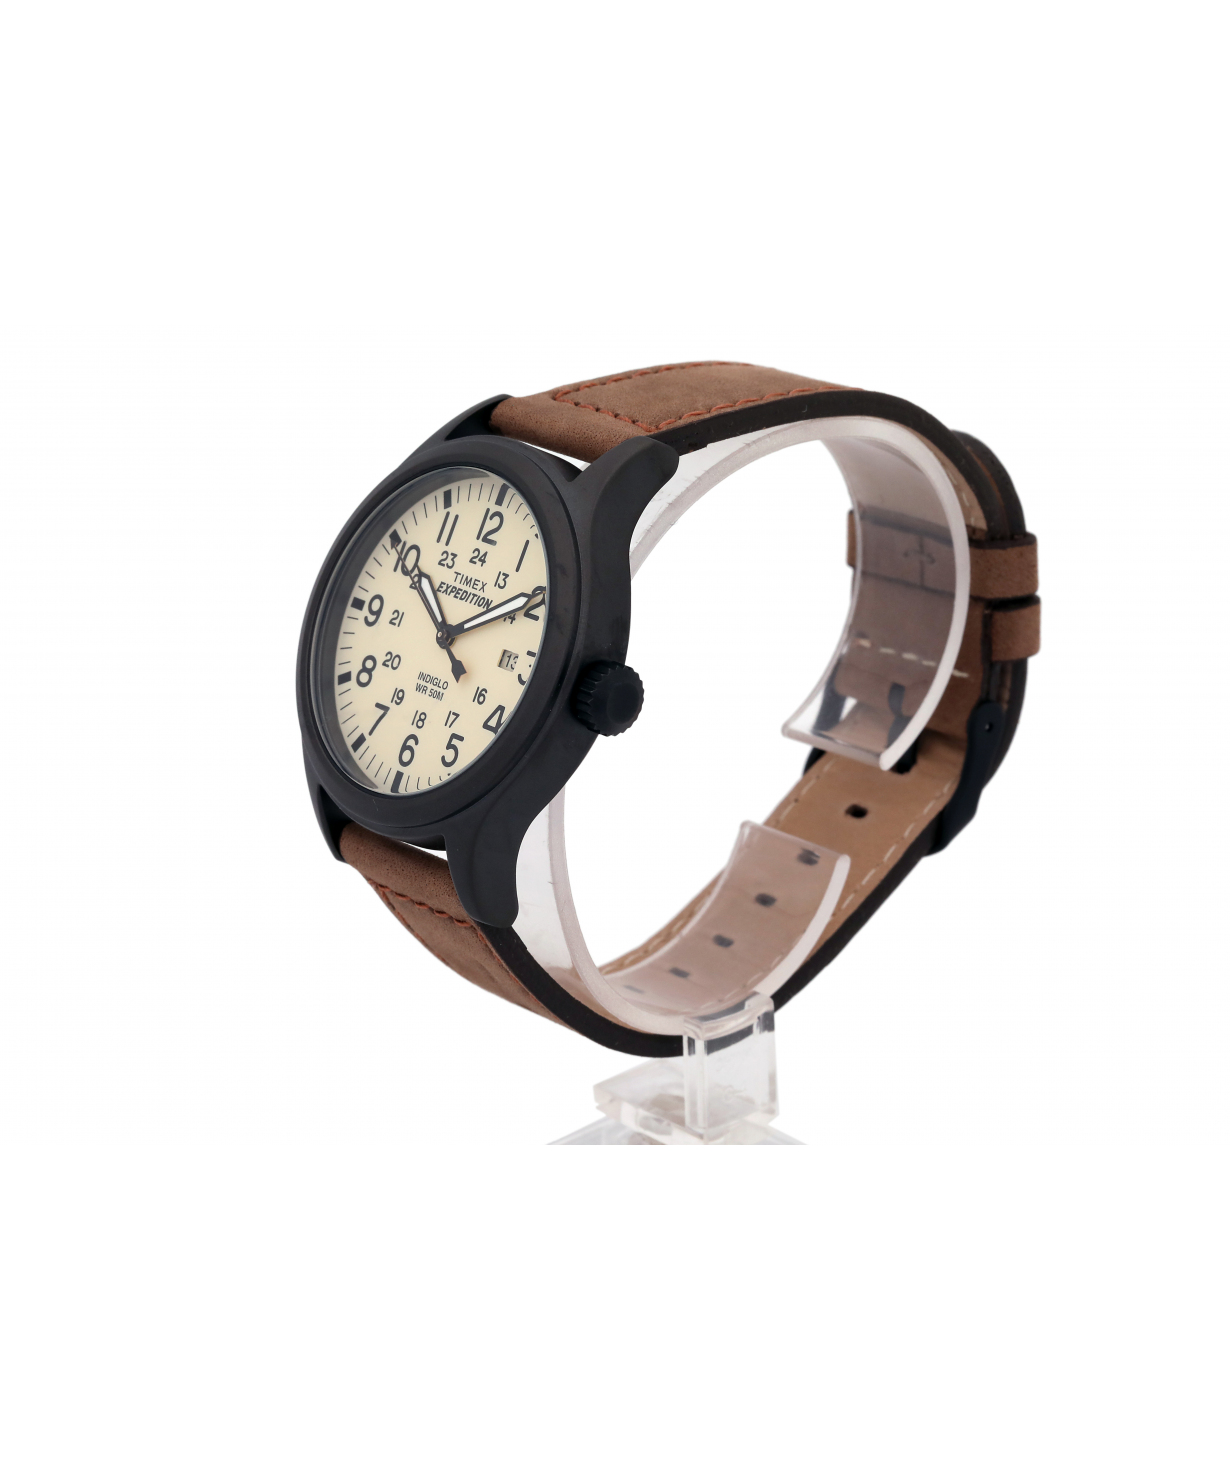 Ժամացույց «Timex» ձեռքի   T49963